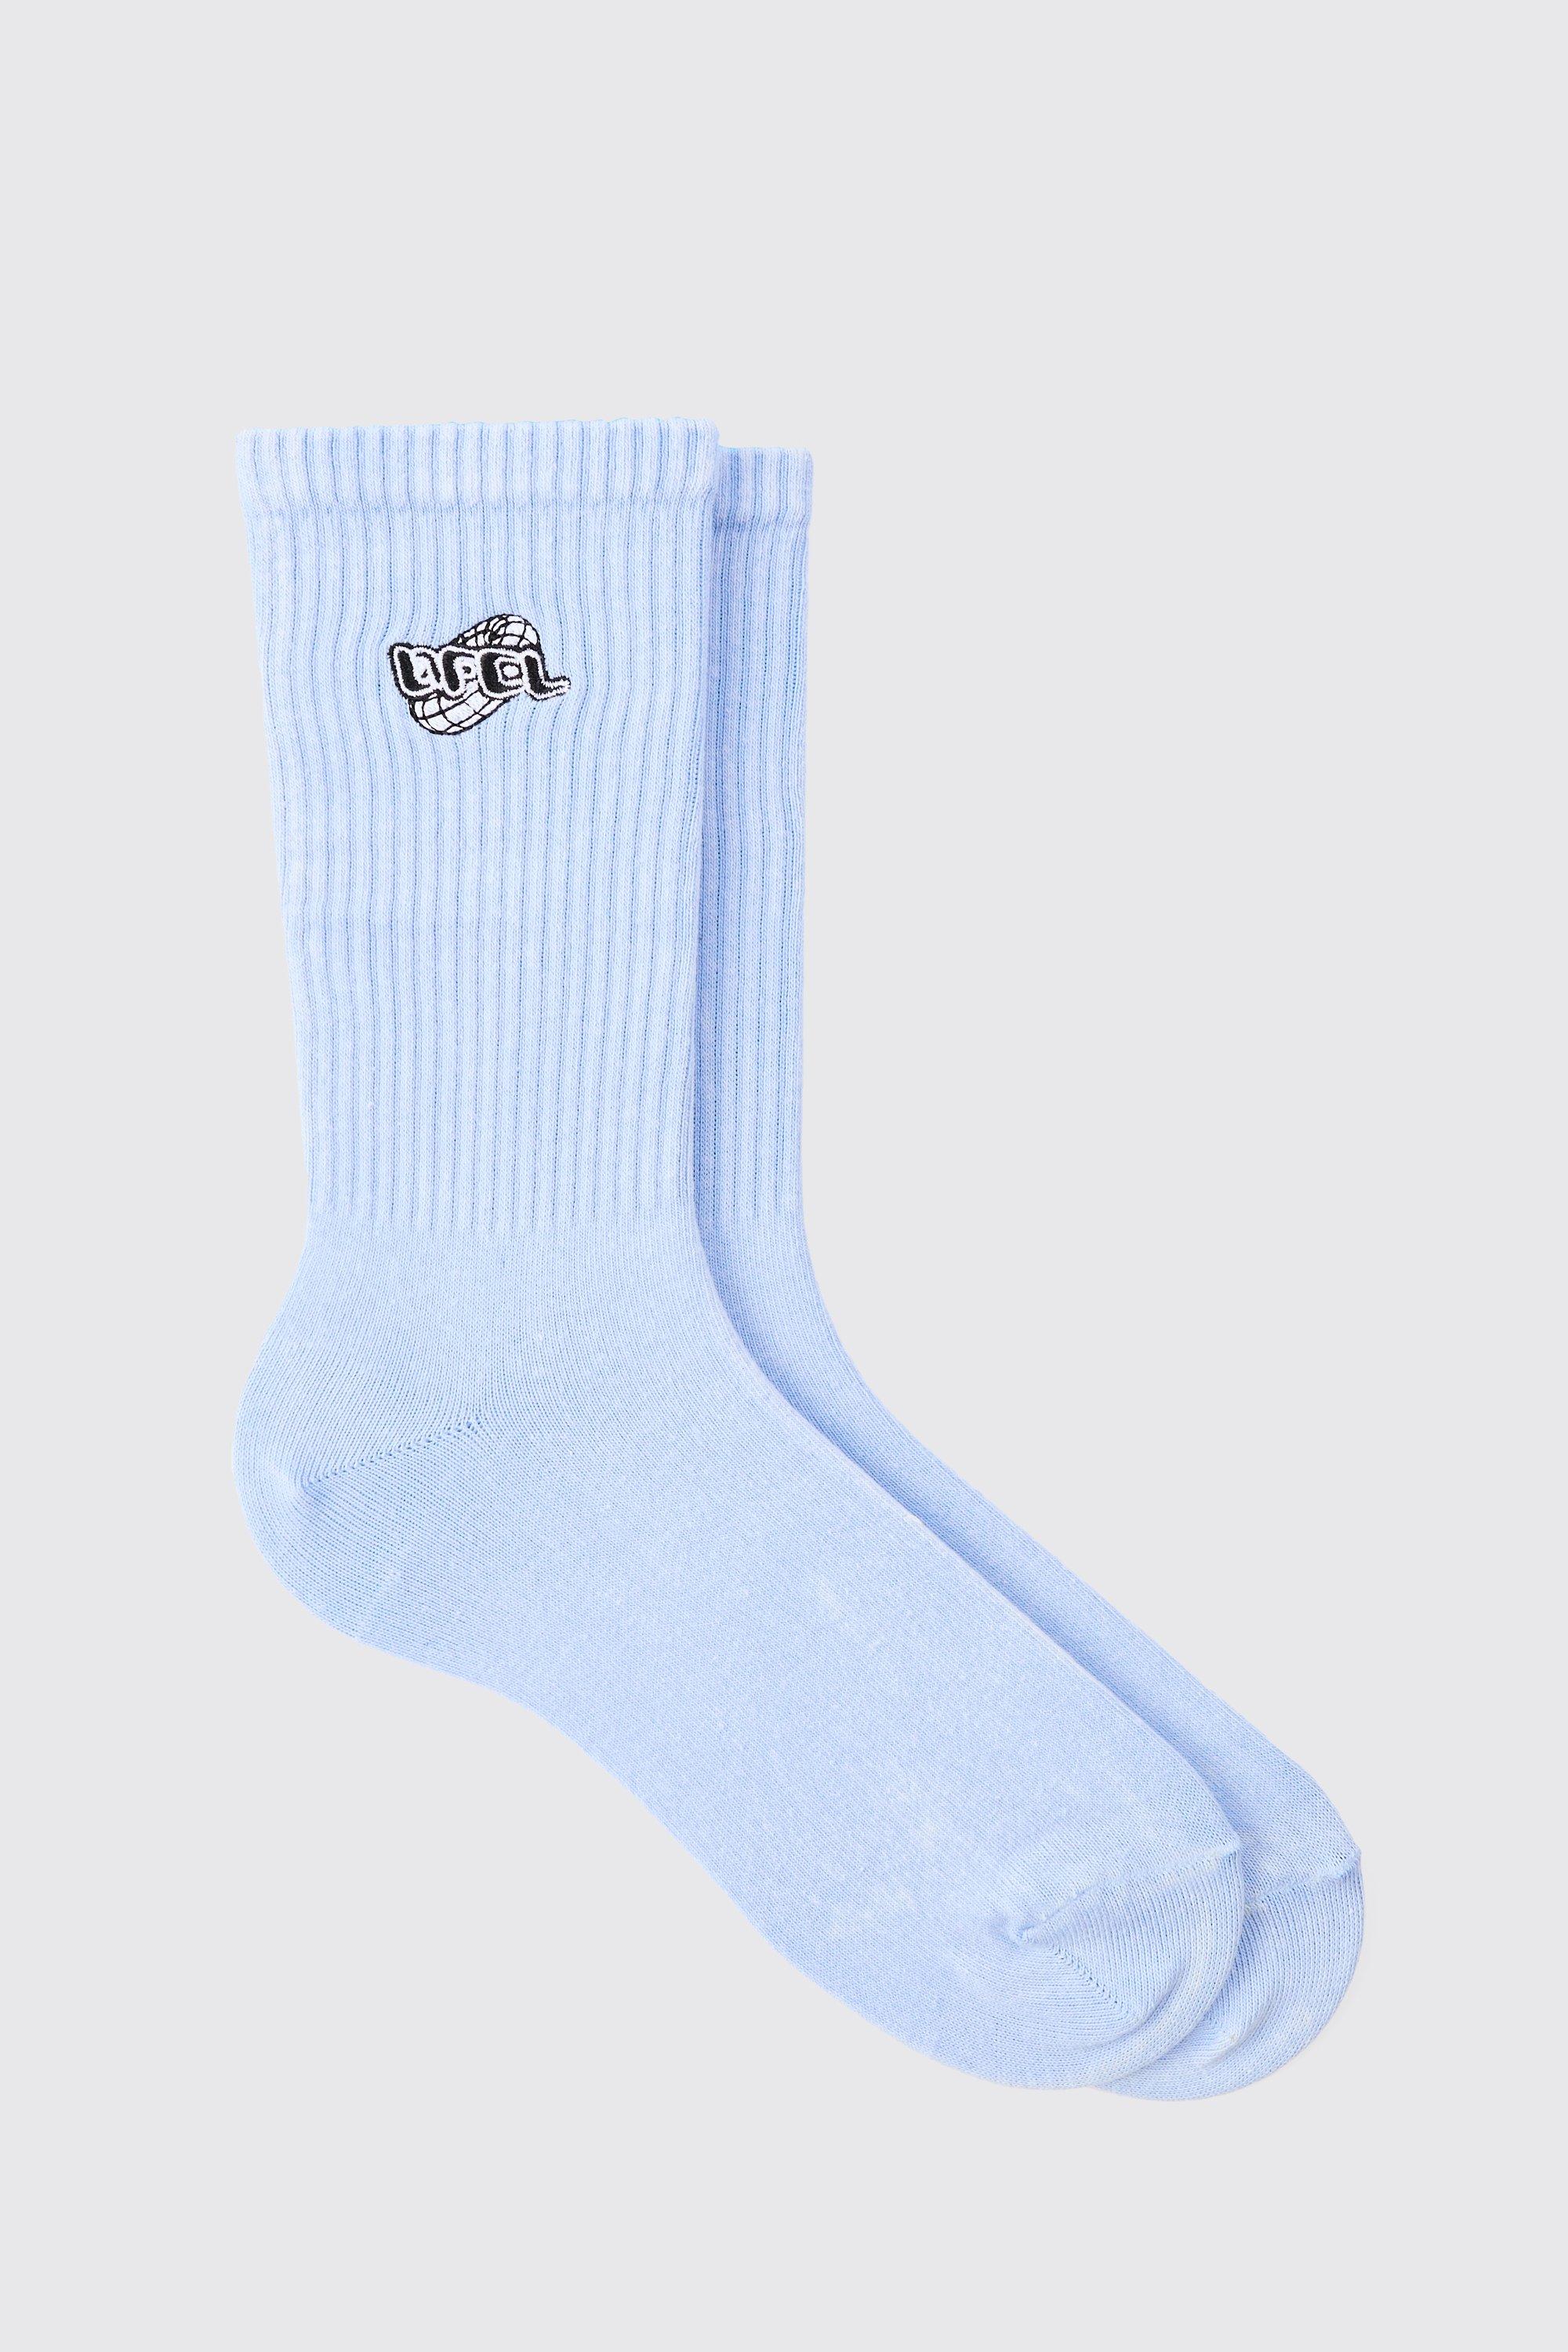 Mens Acid Wash OFCL Embroidered Socks In Light Blue, Blue